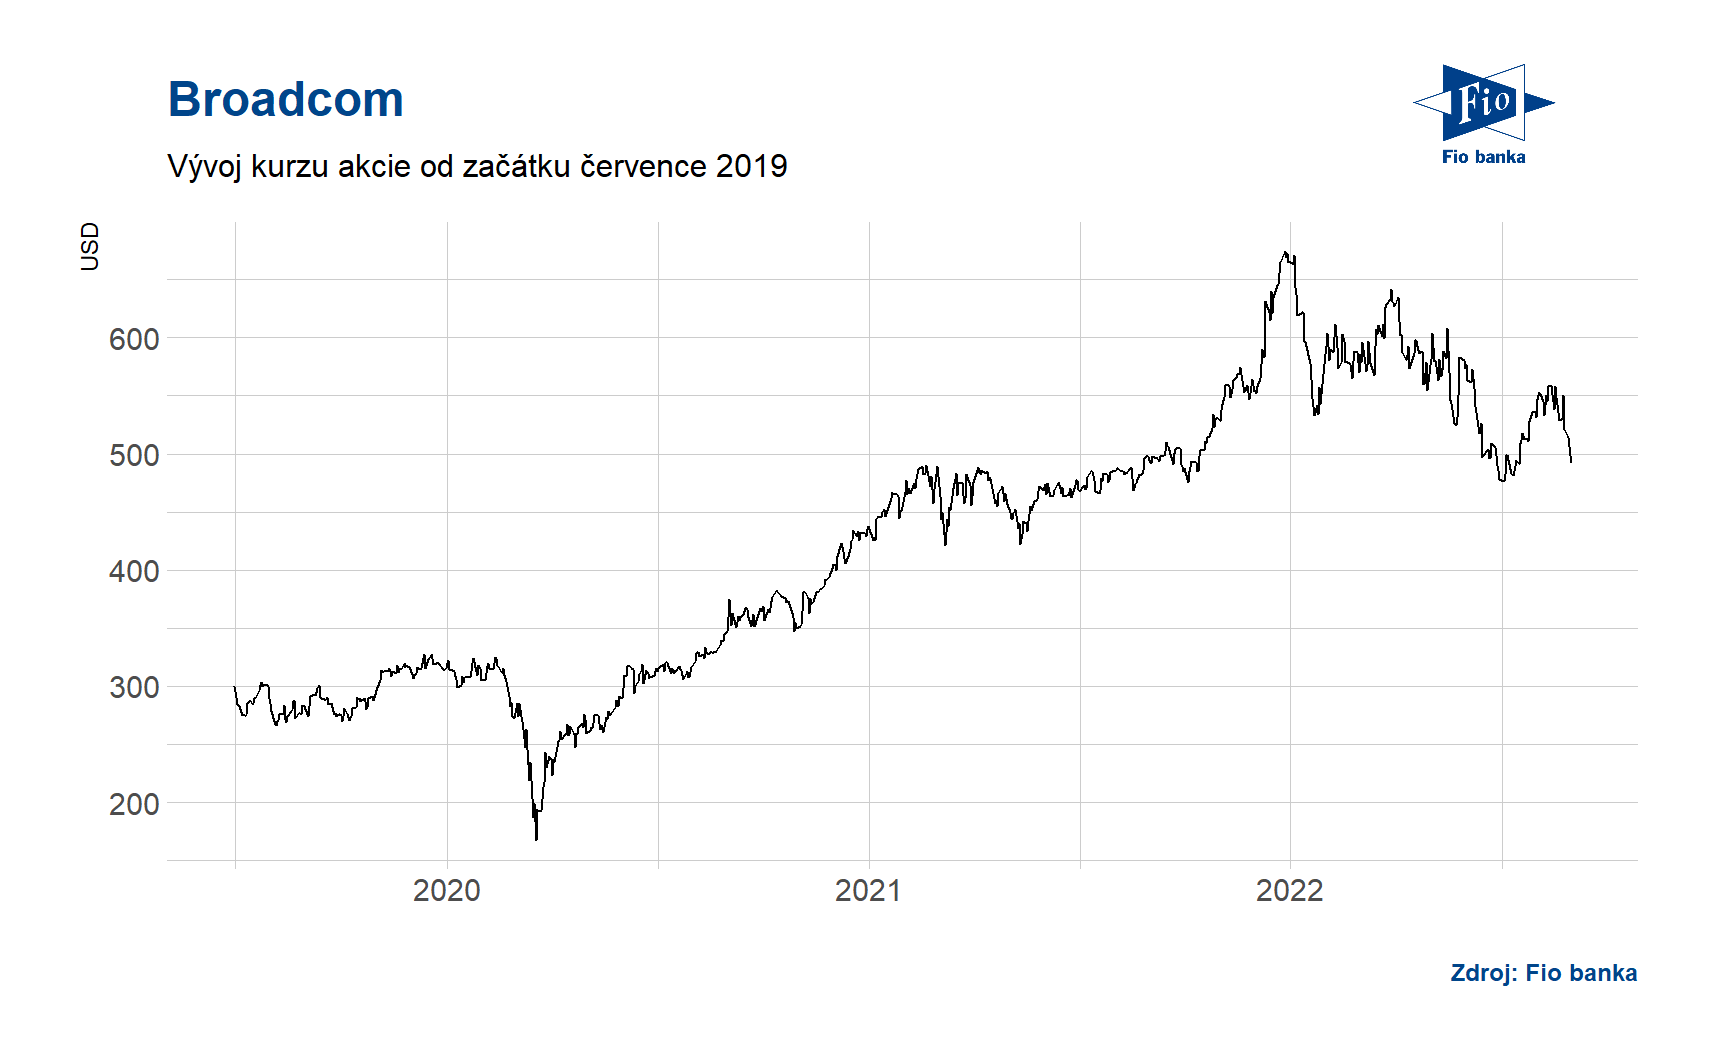 Vývoj ceny akcií společnosti Broadcom